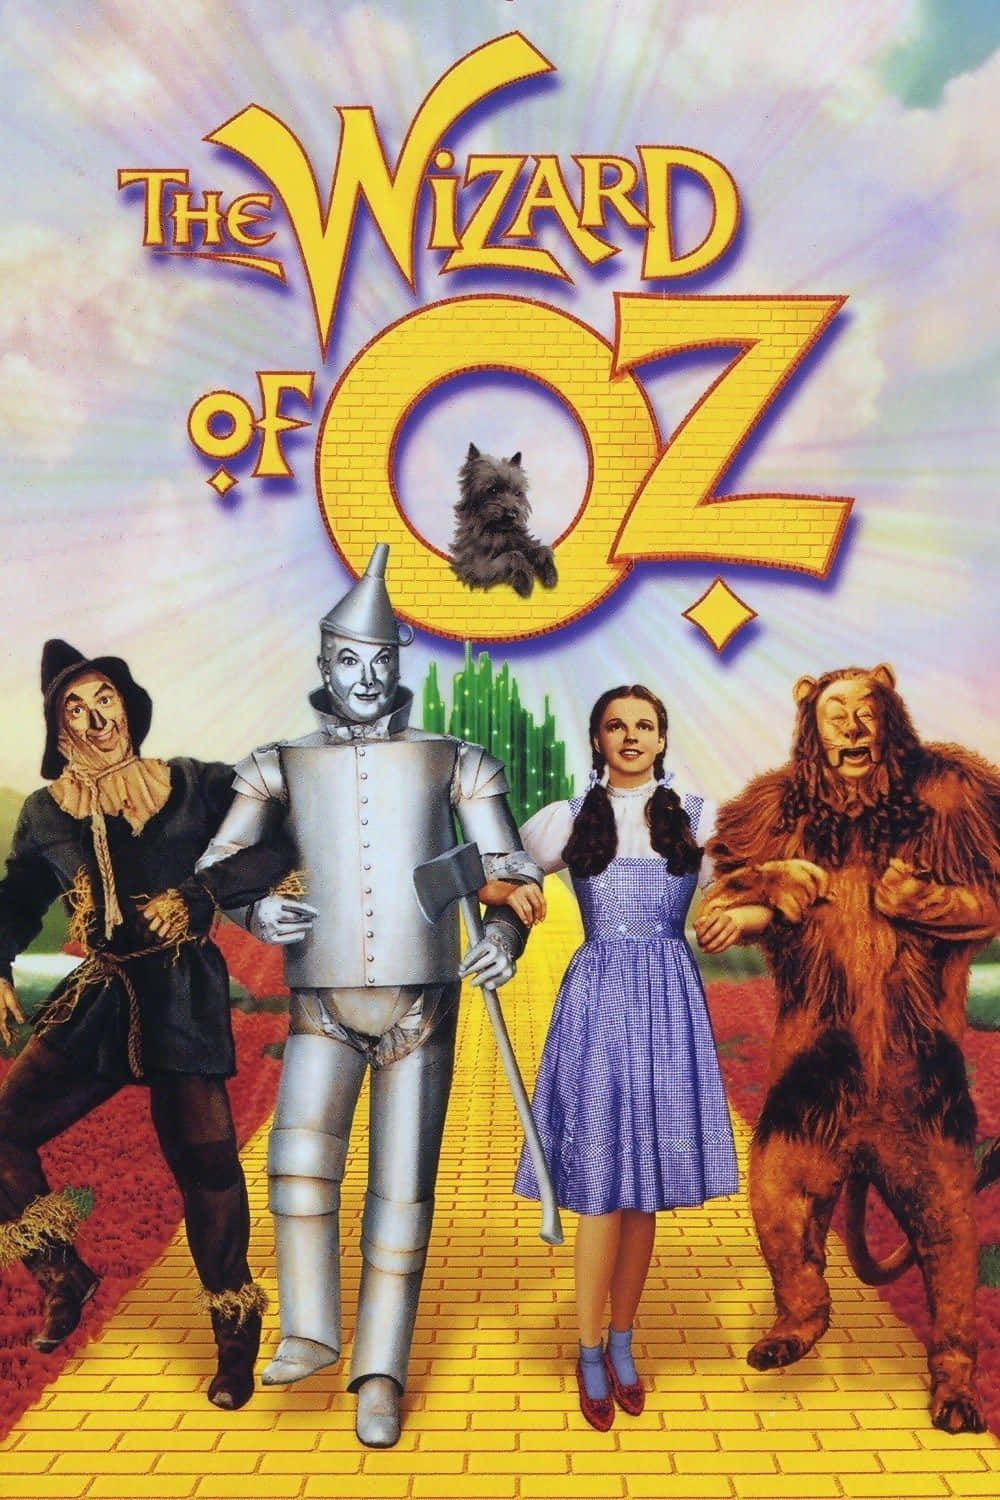 Feiernsie Das Klassische Abenteuer Des Zauberers Von Oz. Wallpaper